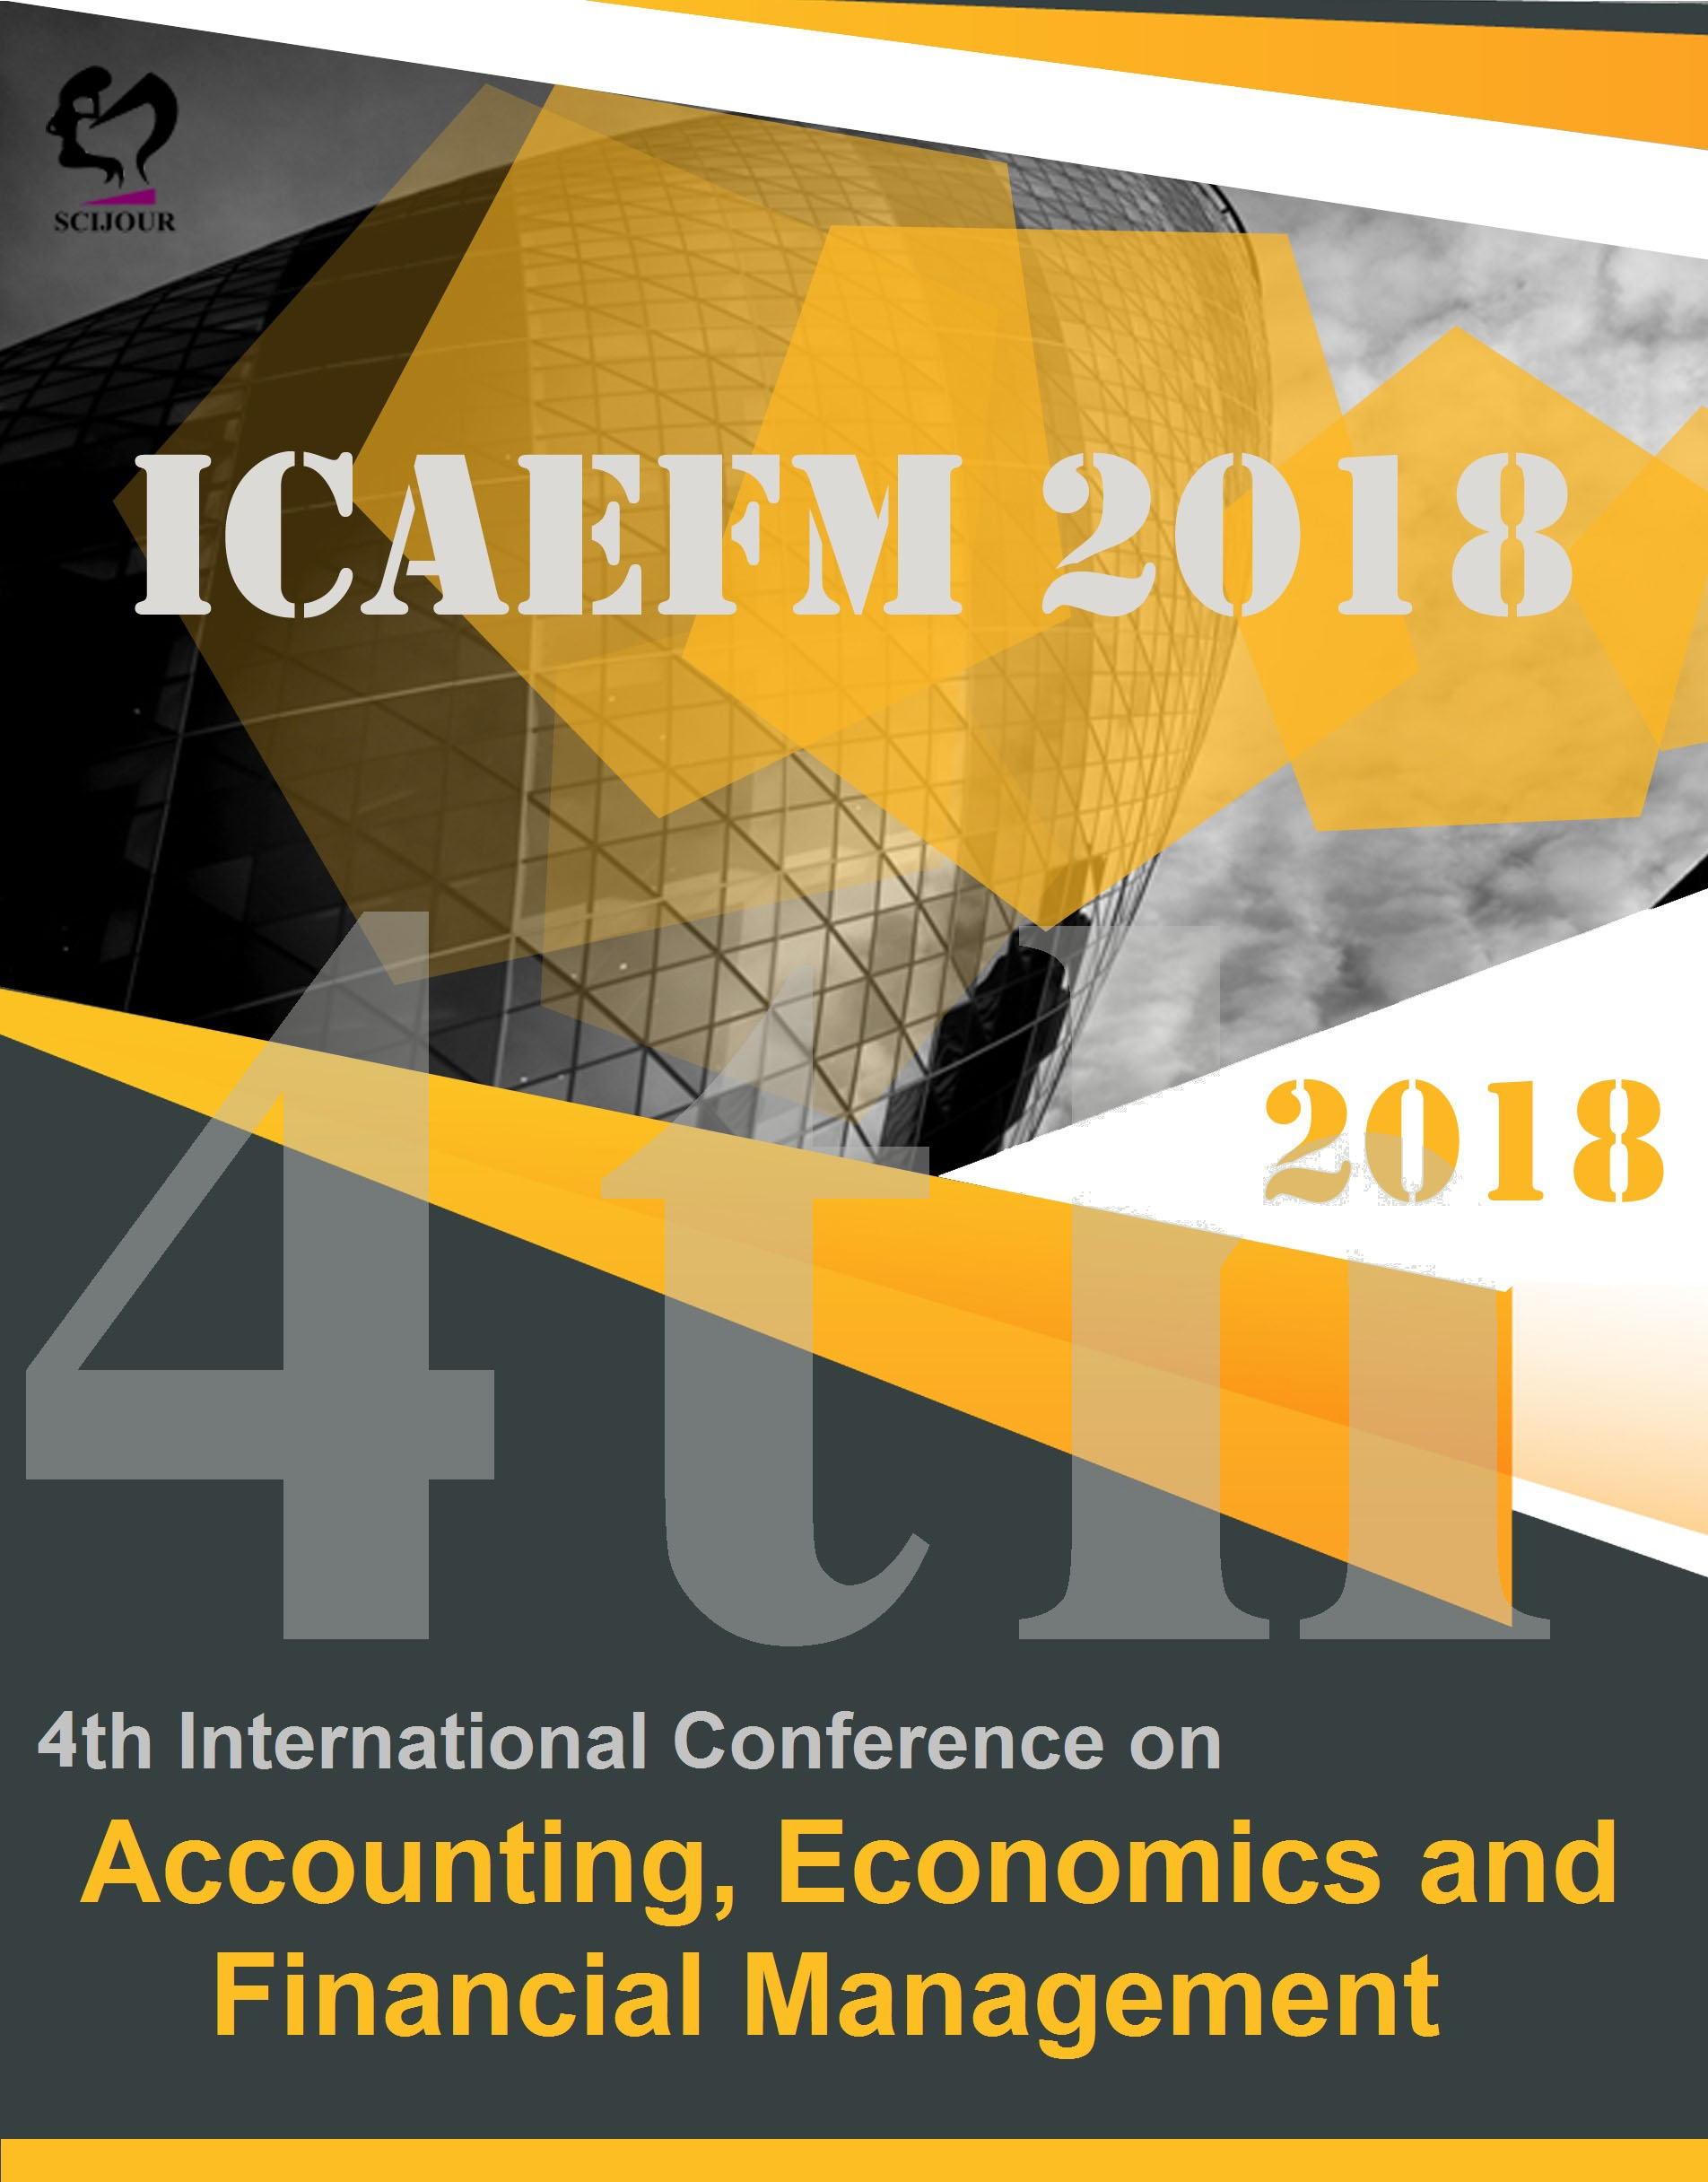 پوستر چهارمین همایش بین المللی حسابداری، اقتصاد و مدیریت مالی